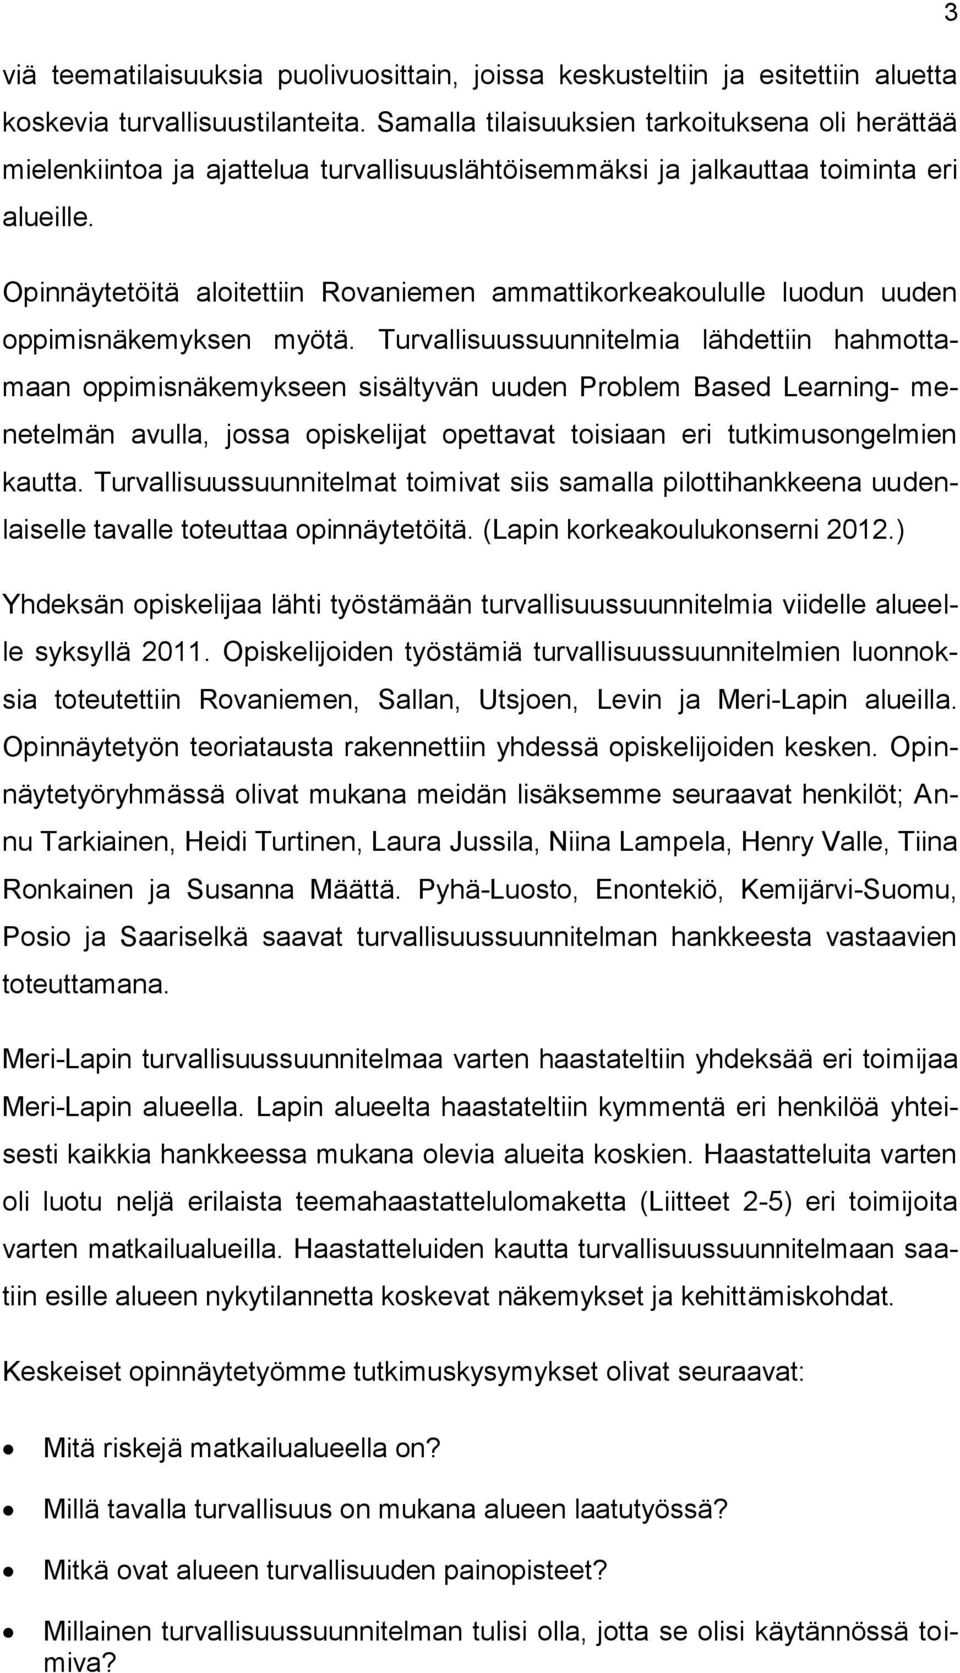 Opinnäytetöitä aloitettiin Rovaniemen ammattikorkeakoululle luodun uuden oppimisnäkemyksen myötä.